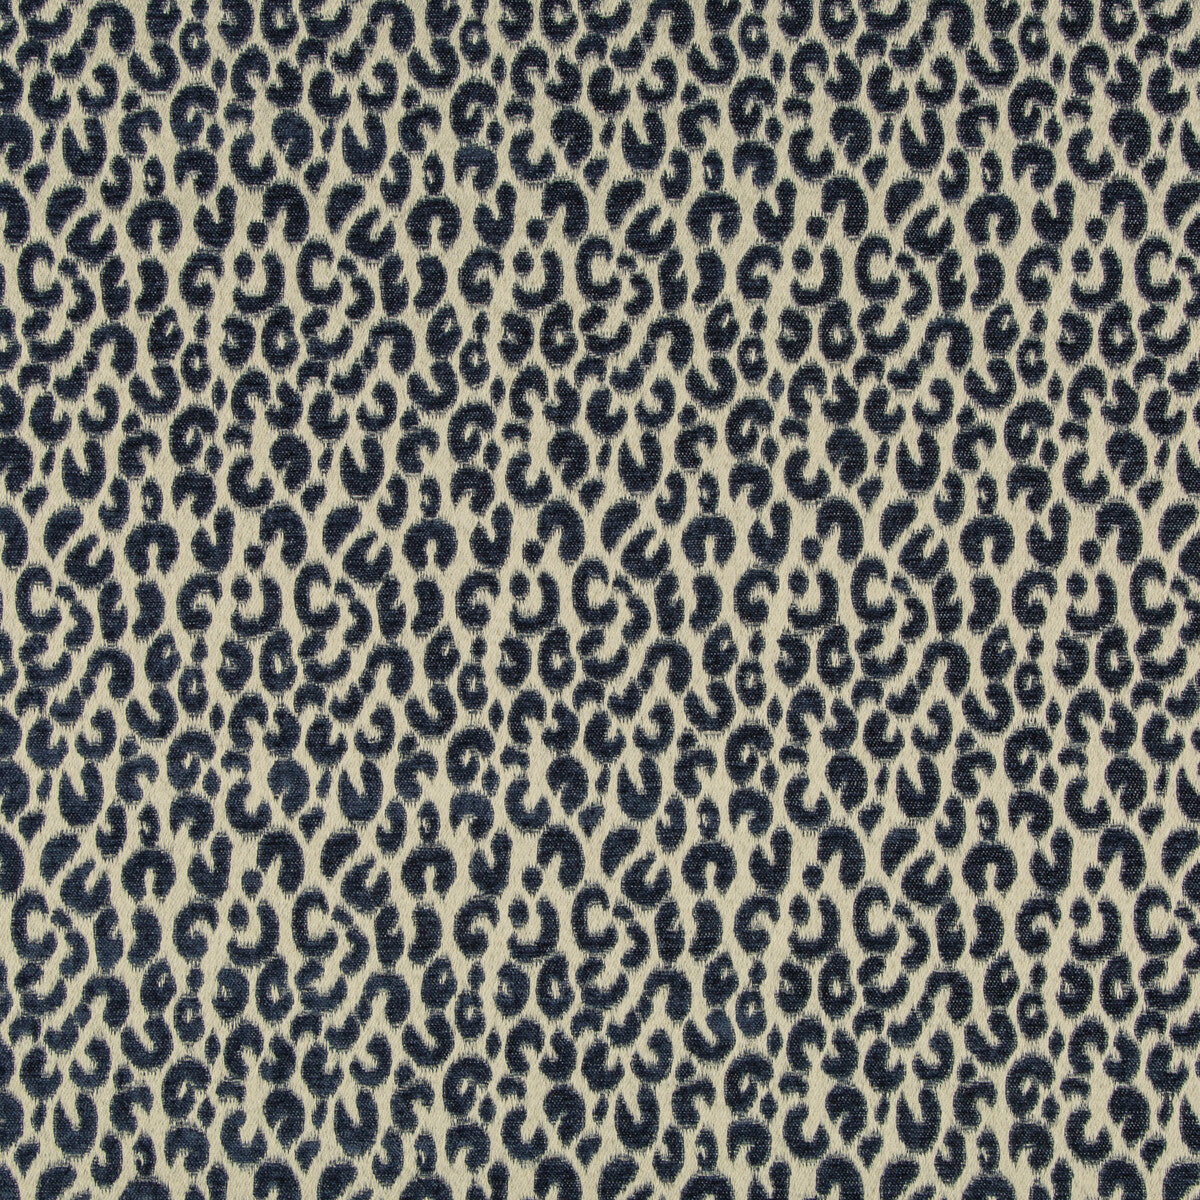 Kravet Design fabric in 35726-516 color - pattern 35726.516.0 - by Kravet Design